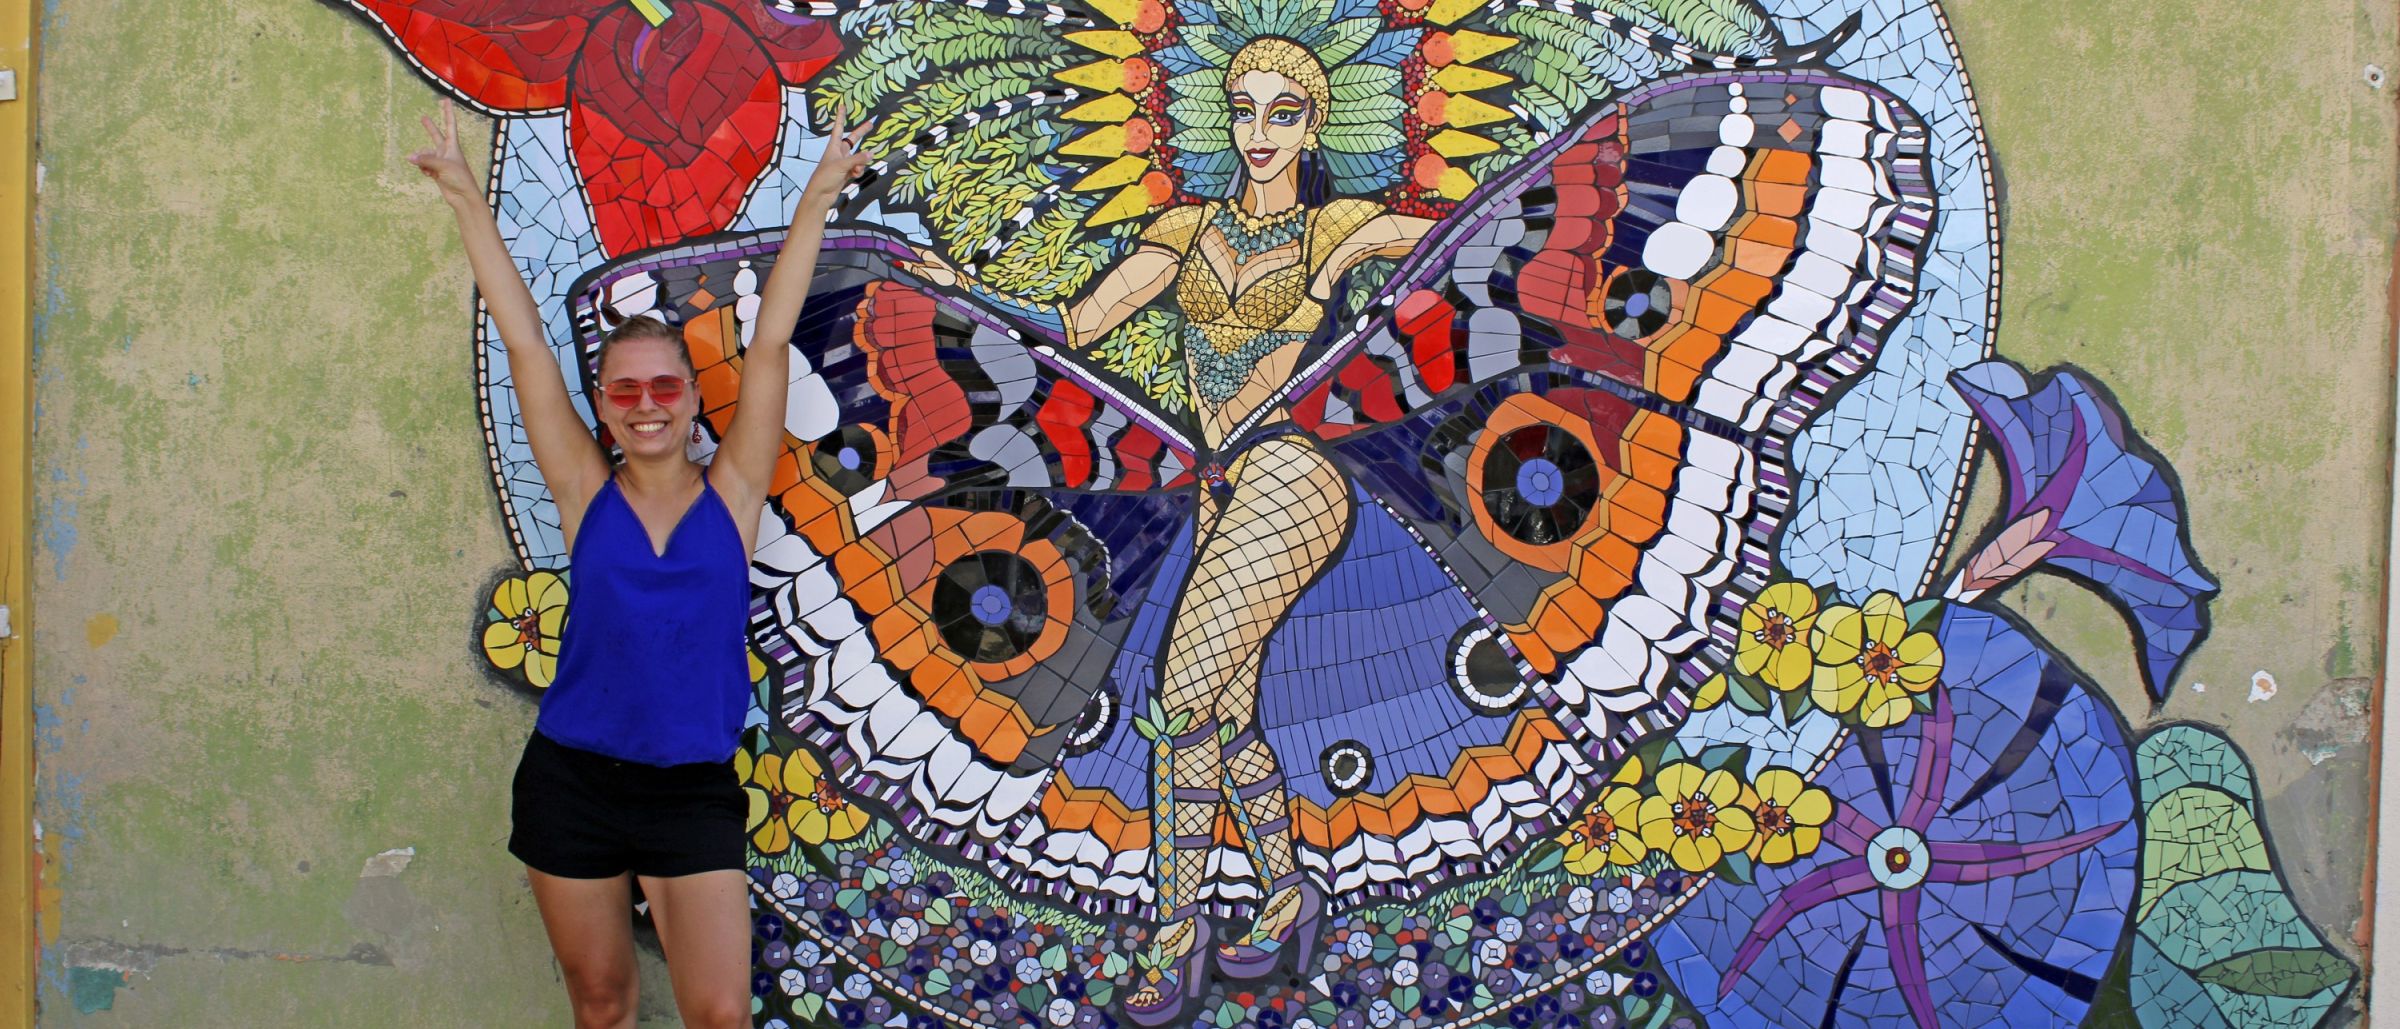 Das beeindruckende Mosaik zeigt eine Karnevals-Nymphe, die das ganze Jahr über Karnevalsfeeling auf Aruba versprüht.